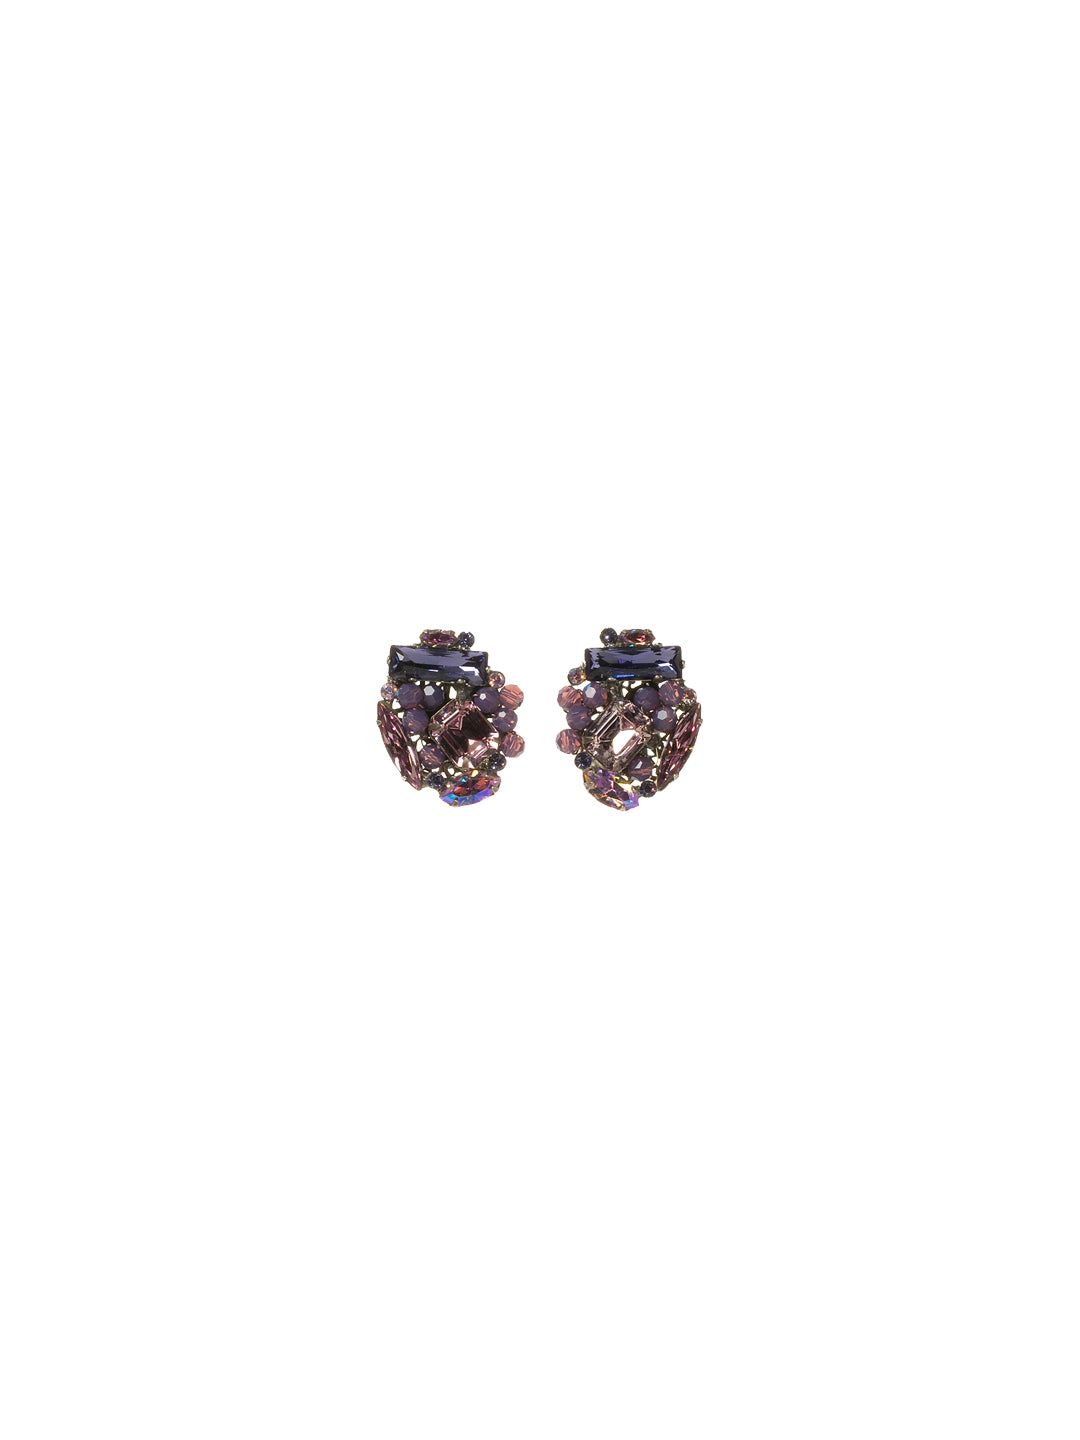 Oversized Crystal Cluster Earring Stud Earrings - ECE14ASVE